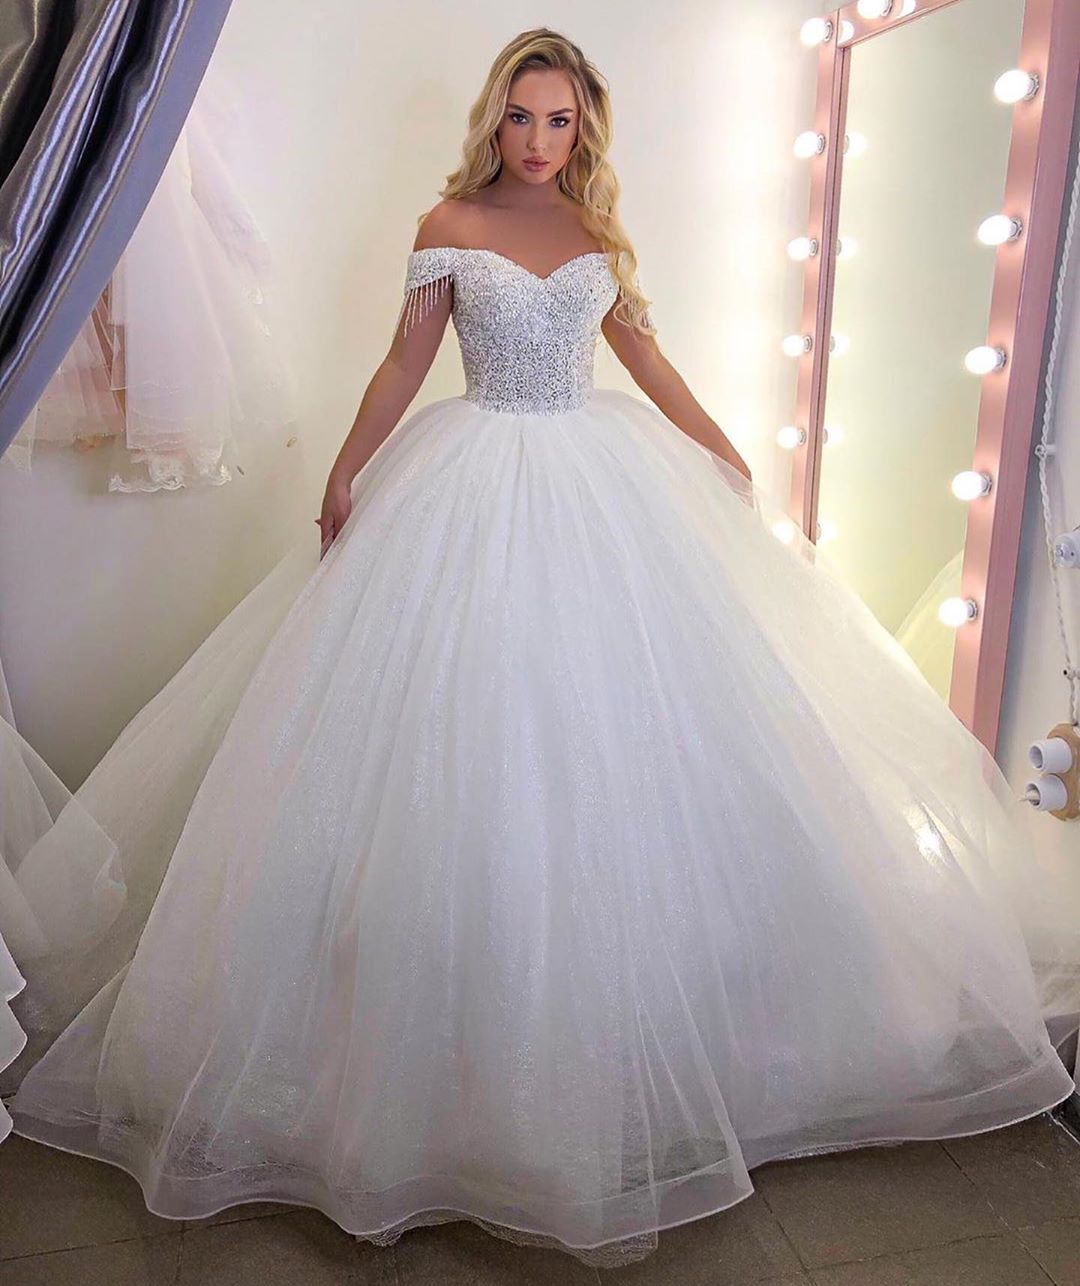 Chic Long Off-the-Shoulder Wedding Dress On Sale-Wedding Dresses-BallBride